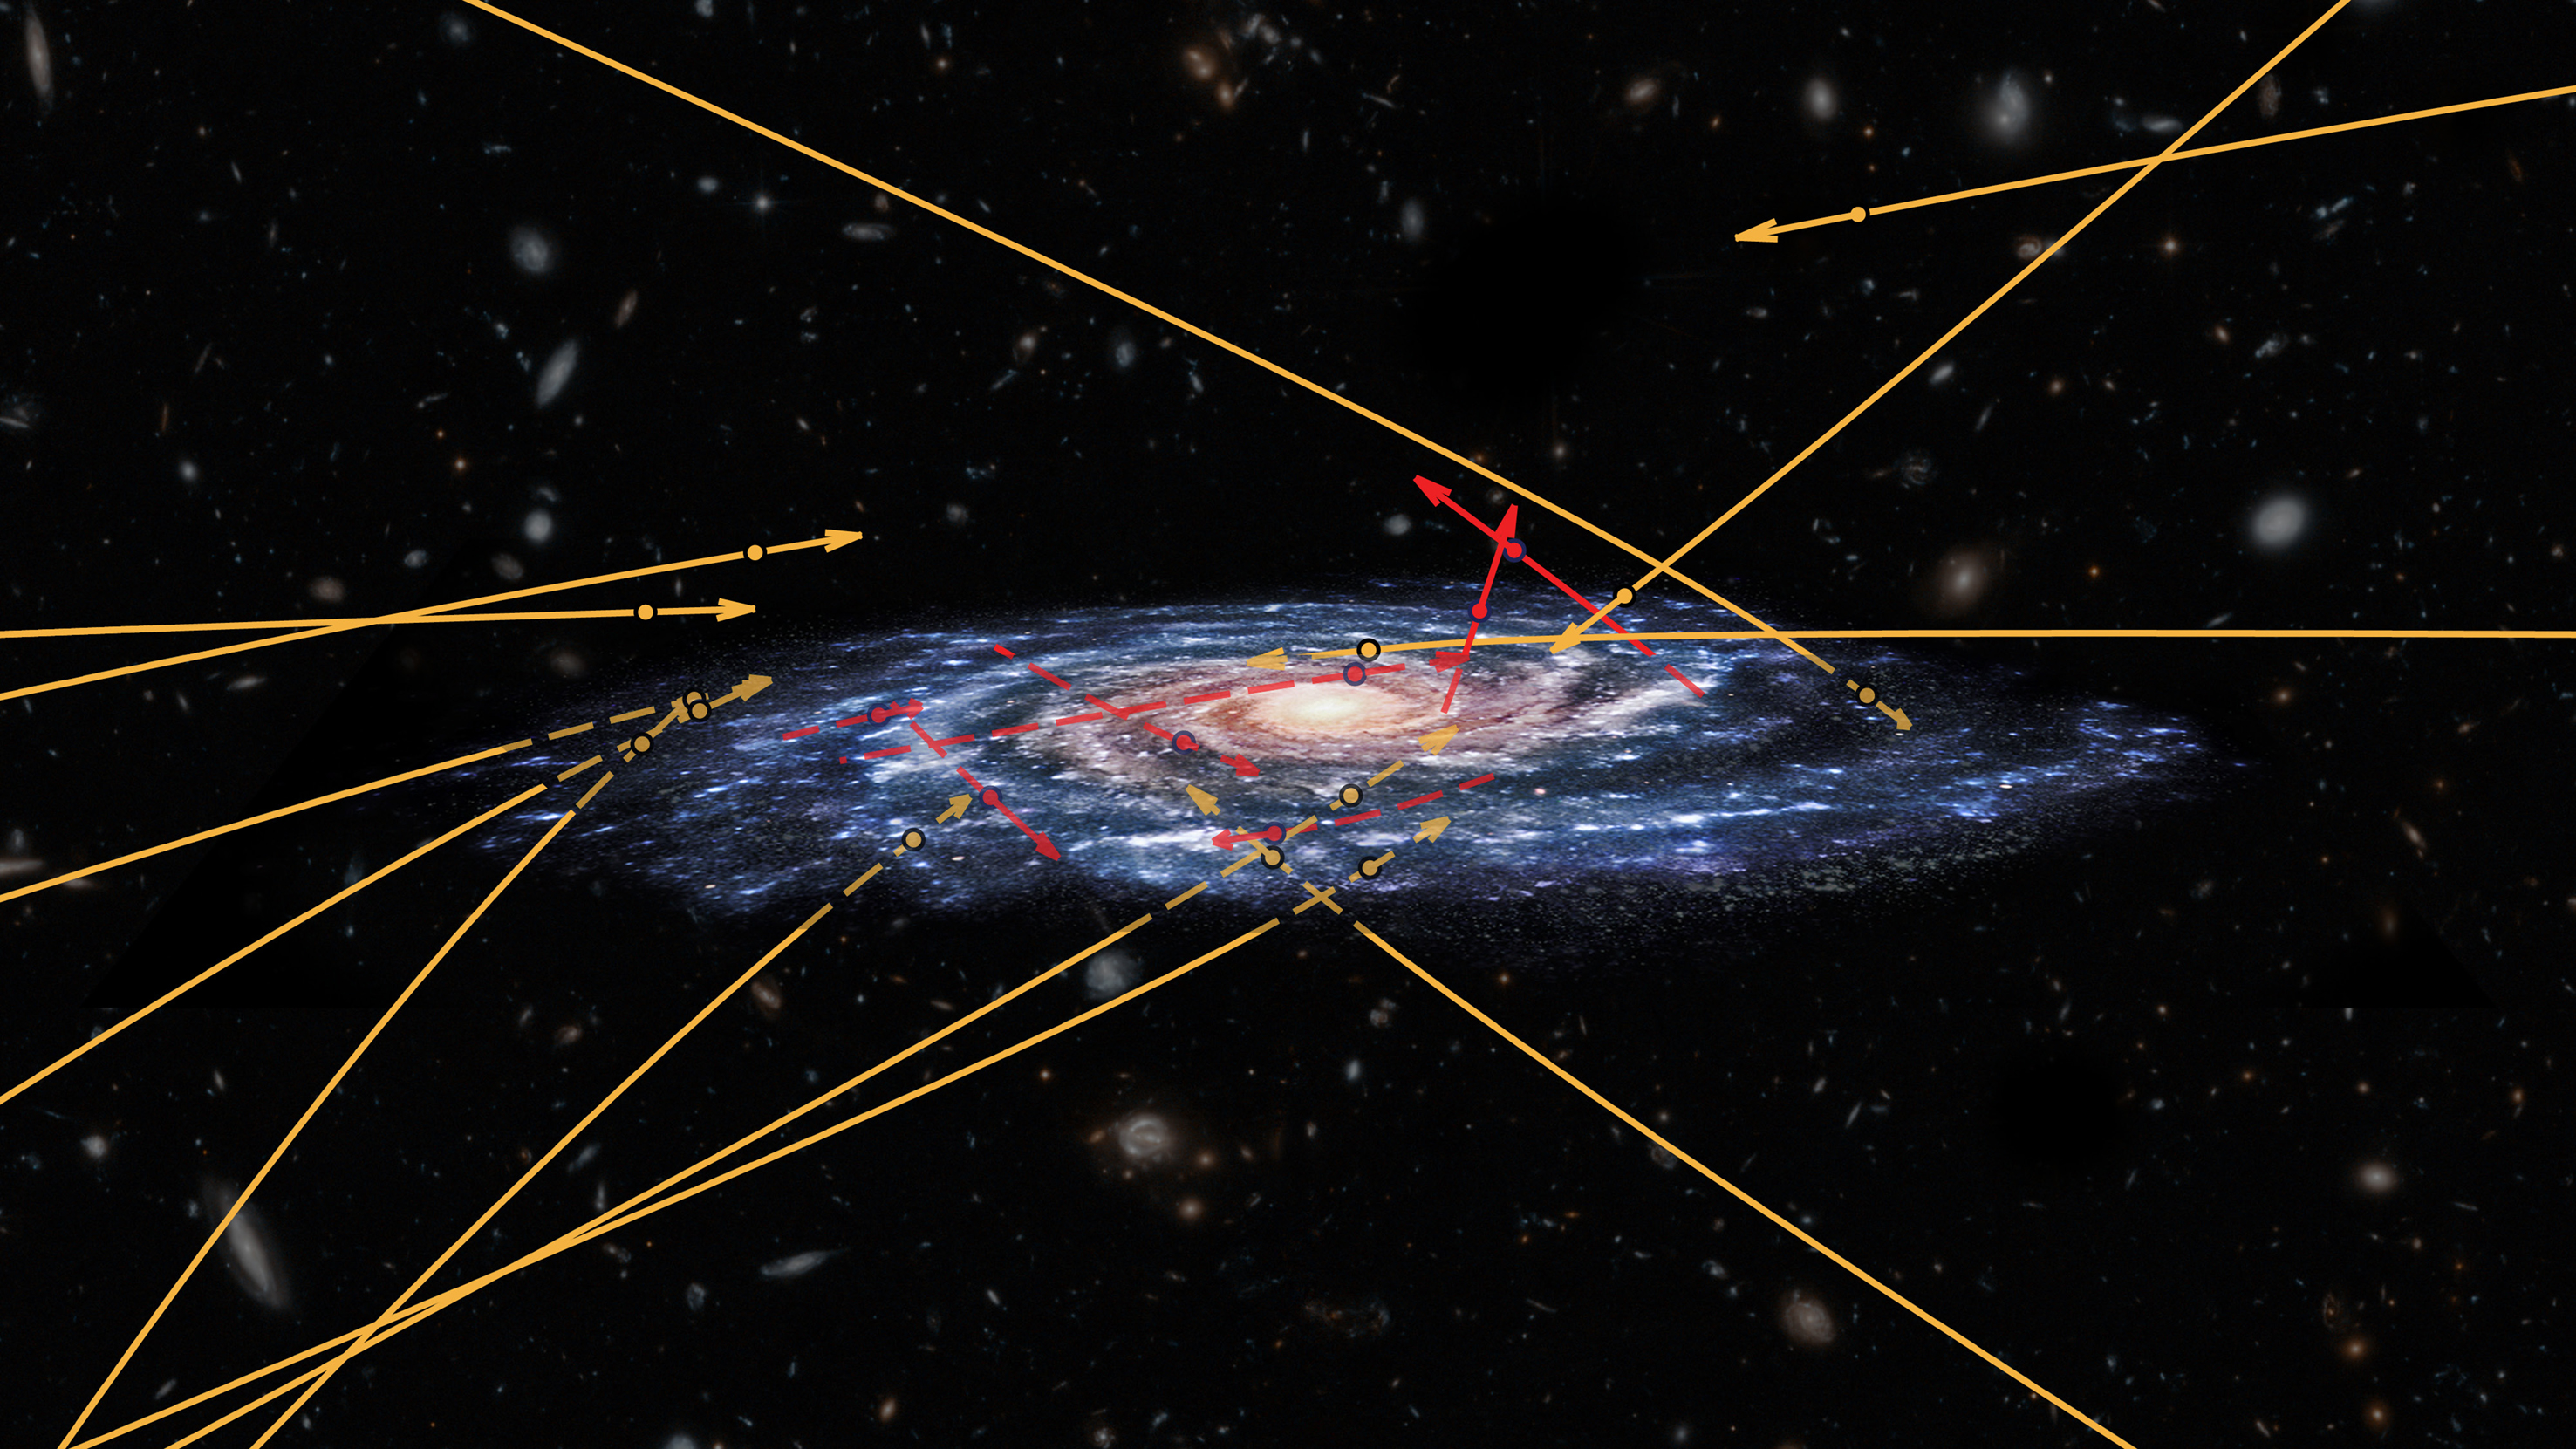 Carrera de estrellas en la Vía Láctea. Recreación artística. Marchetti et al 2018 (posiciones estelares y trayectorias); NASA / ESA / Hubble (galaxias de fondo), CC BY-SA 3.0 IGO.